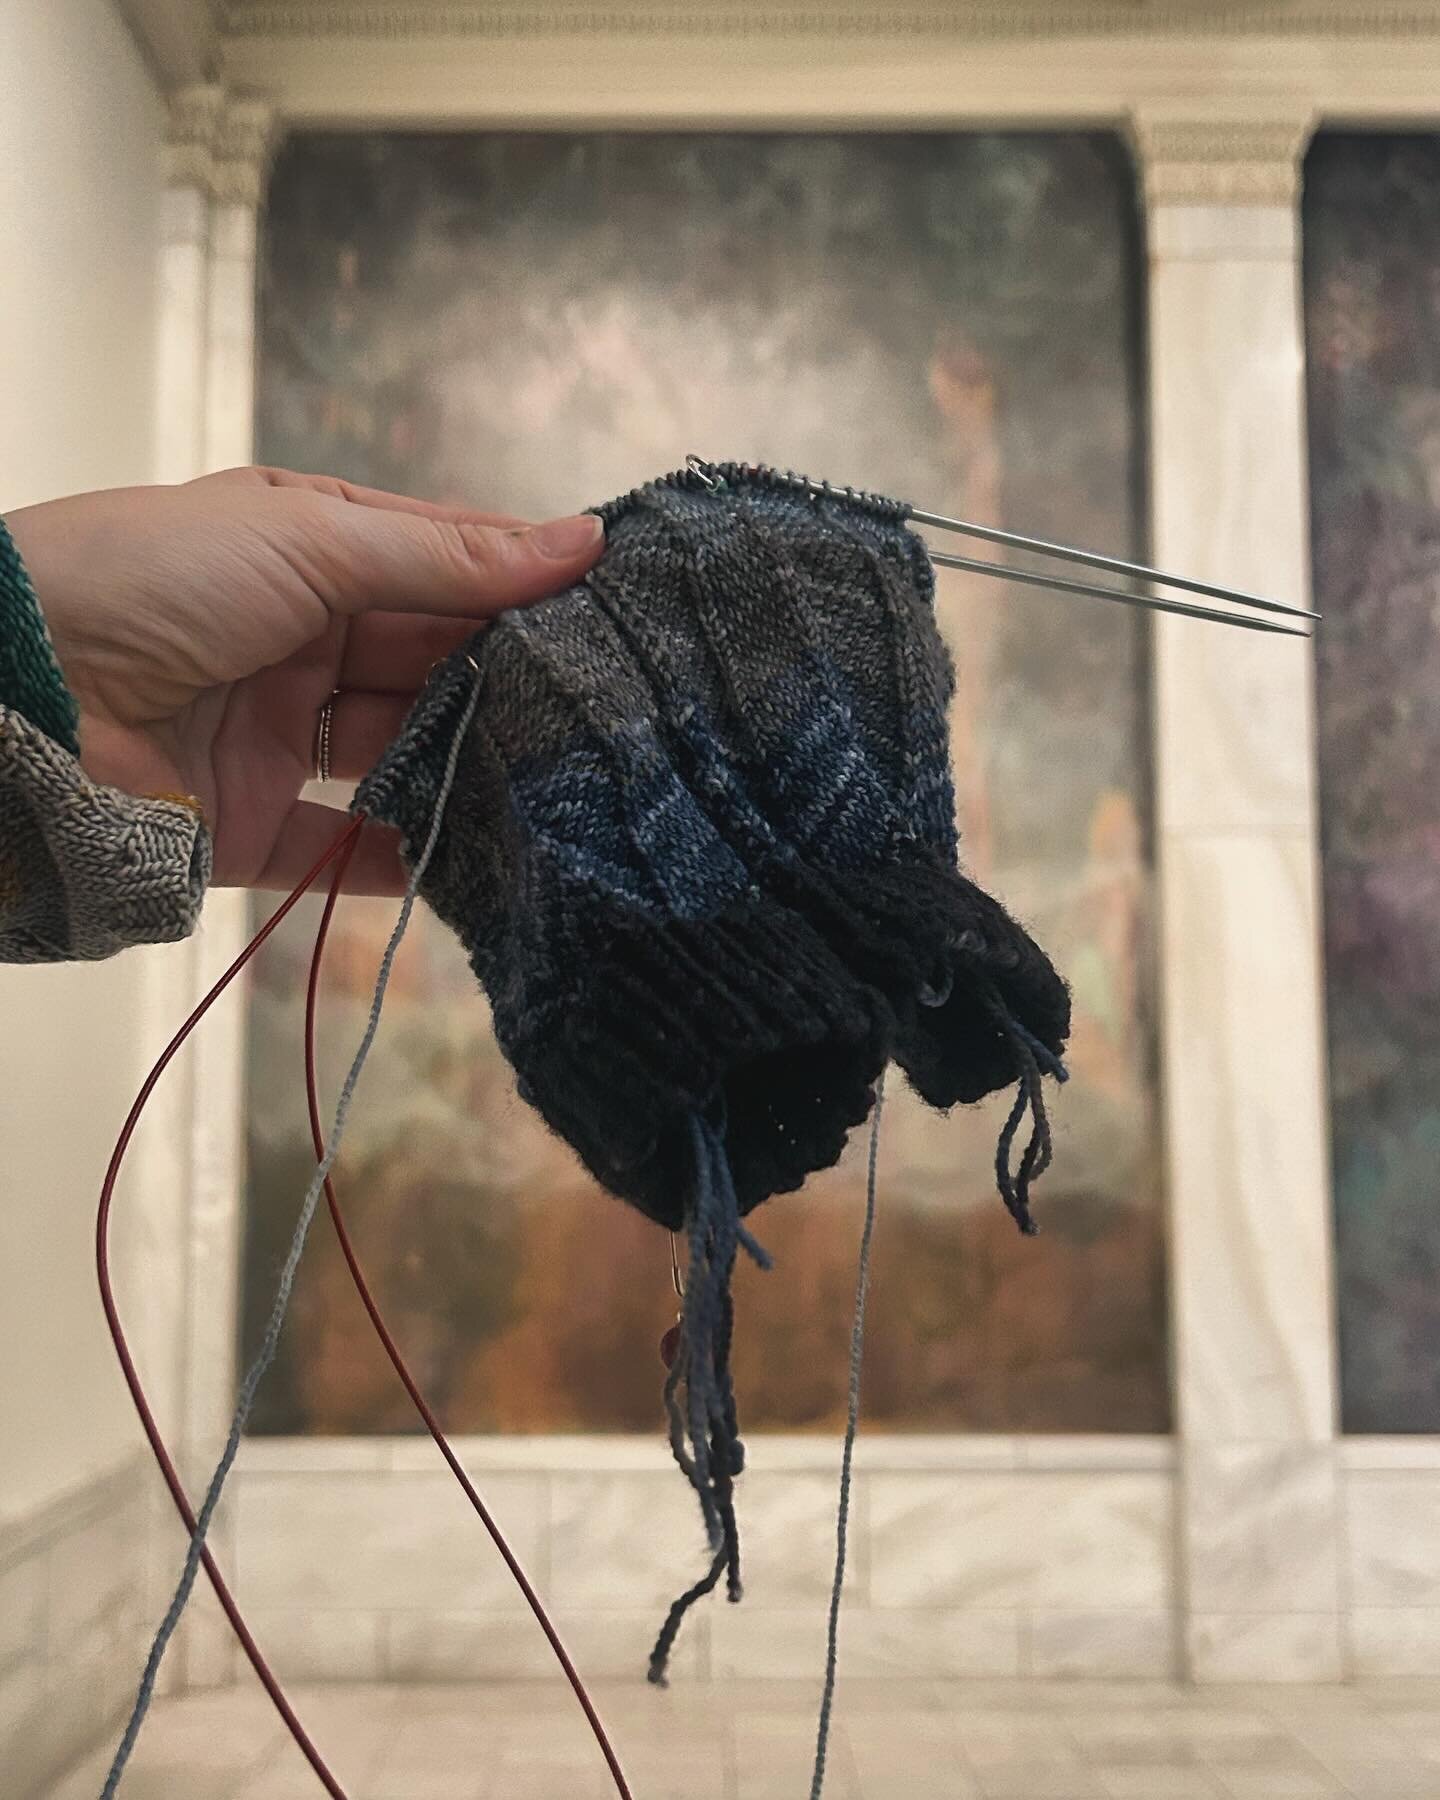 knitting at the @carnegiemuseumofart 
. 
#handknitting #knittersofinstagram #craftisart #handcrafters